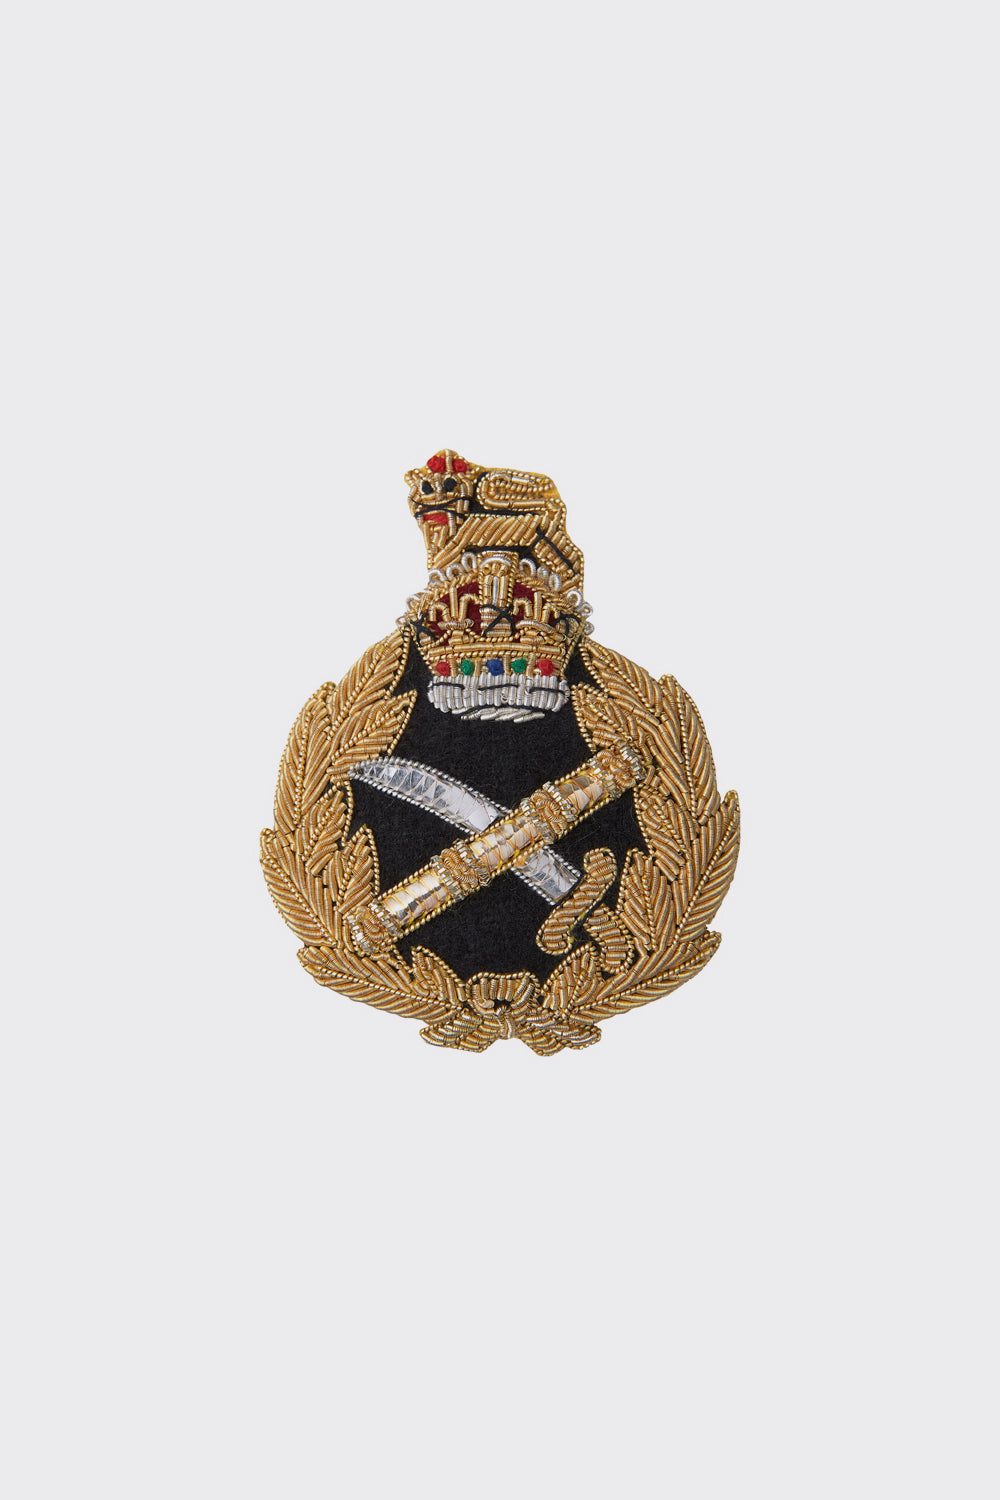 British Army Generals Cap Badge